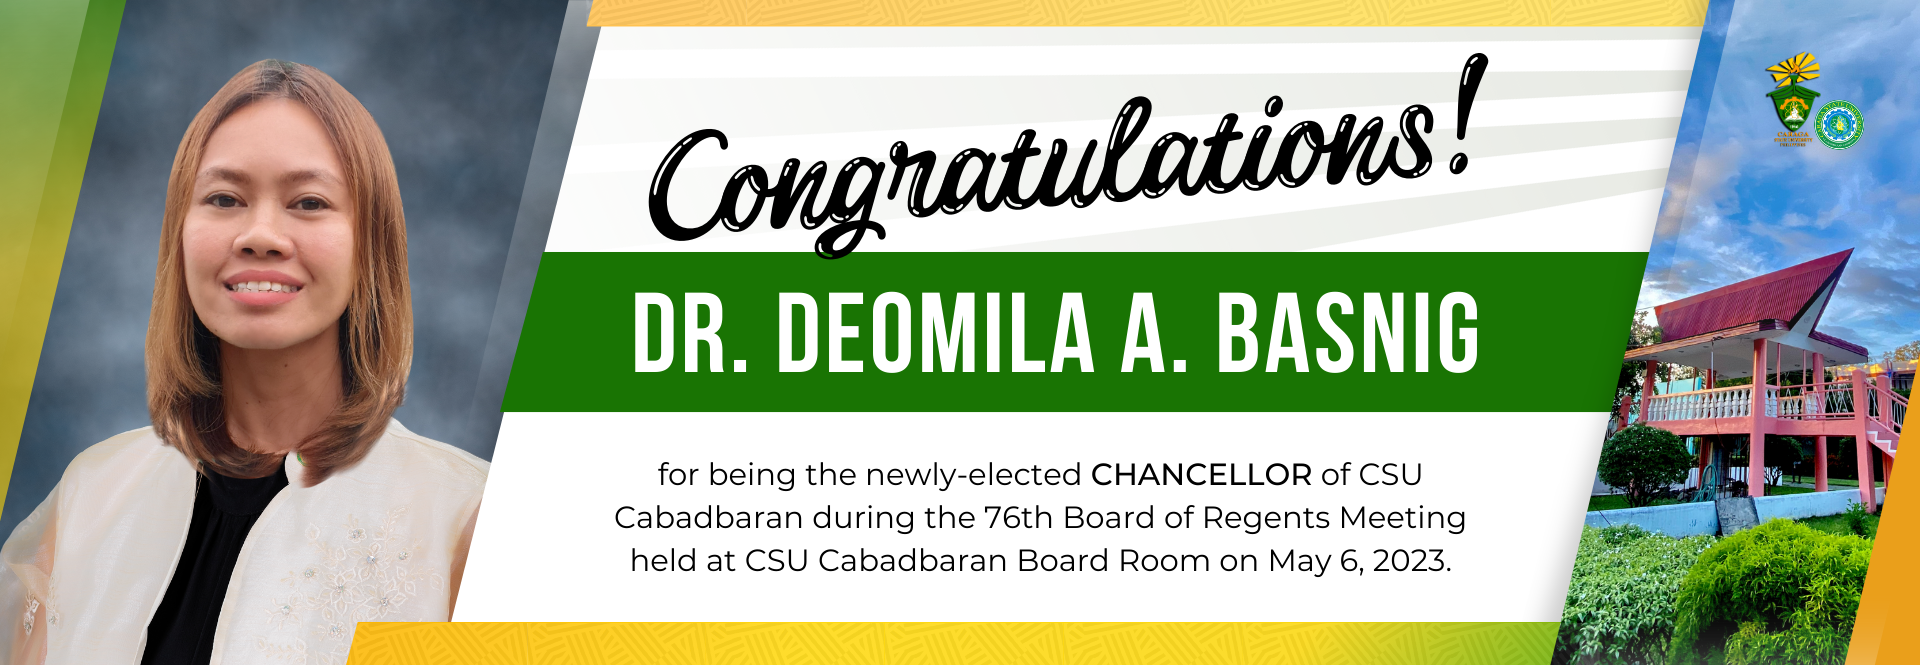 Congratulations Dr. Basnig